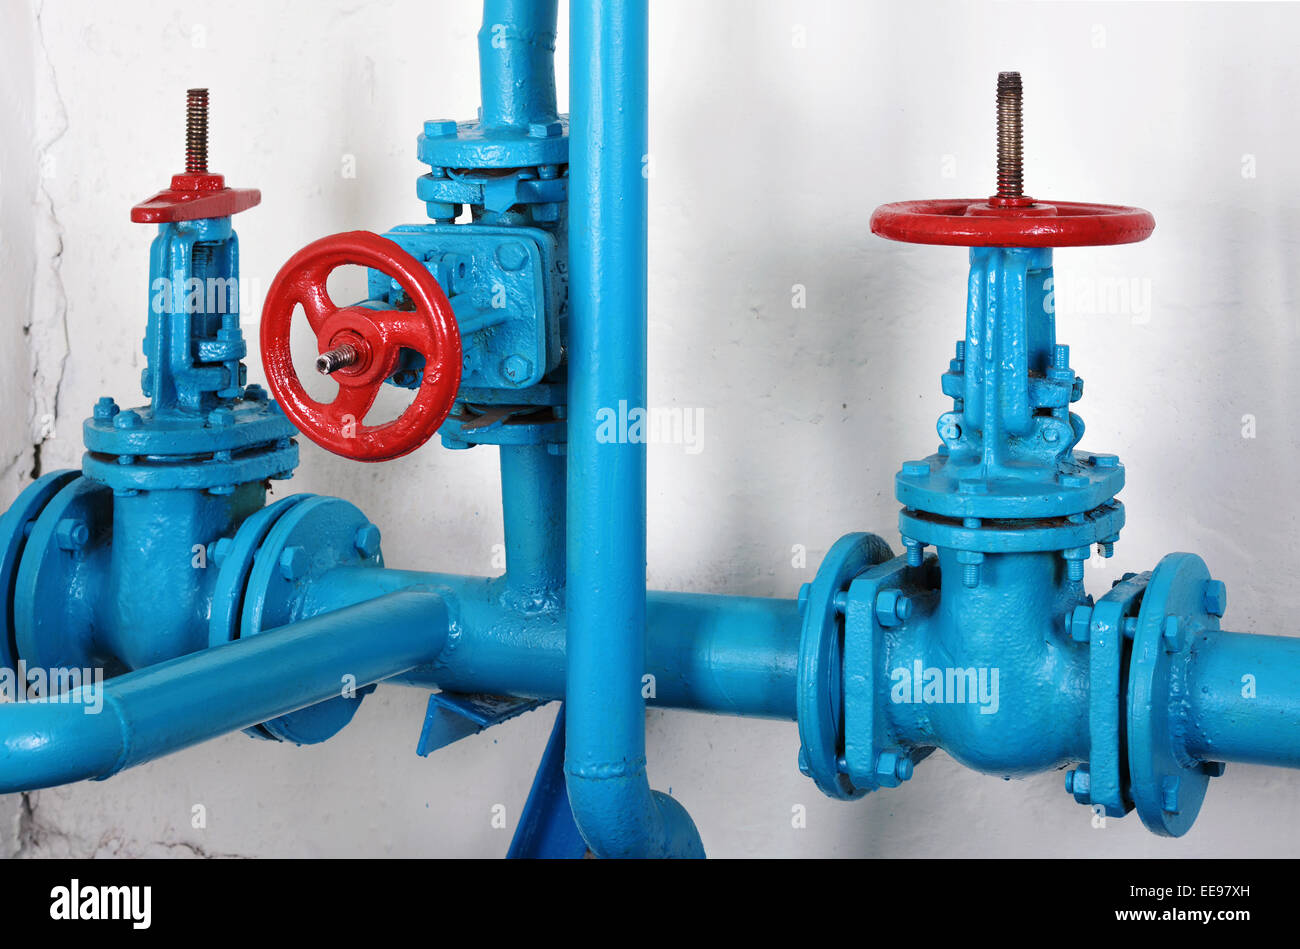 La communication de la puissance de chauffe - les pipelines de la valve d'arrêt et de l'eau chaude et chauffage Banque D'Images